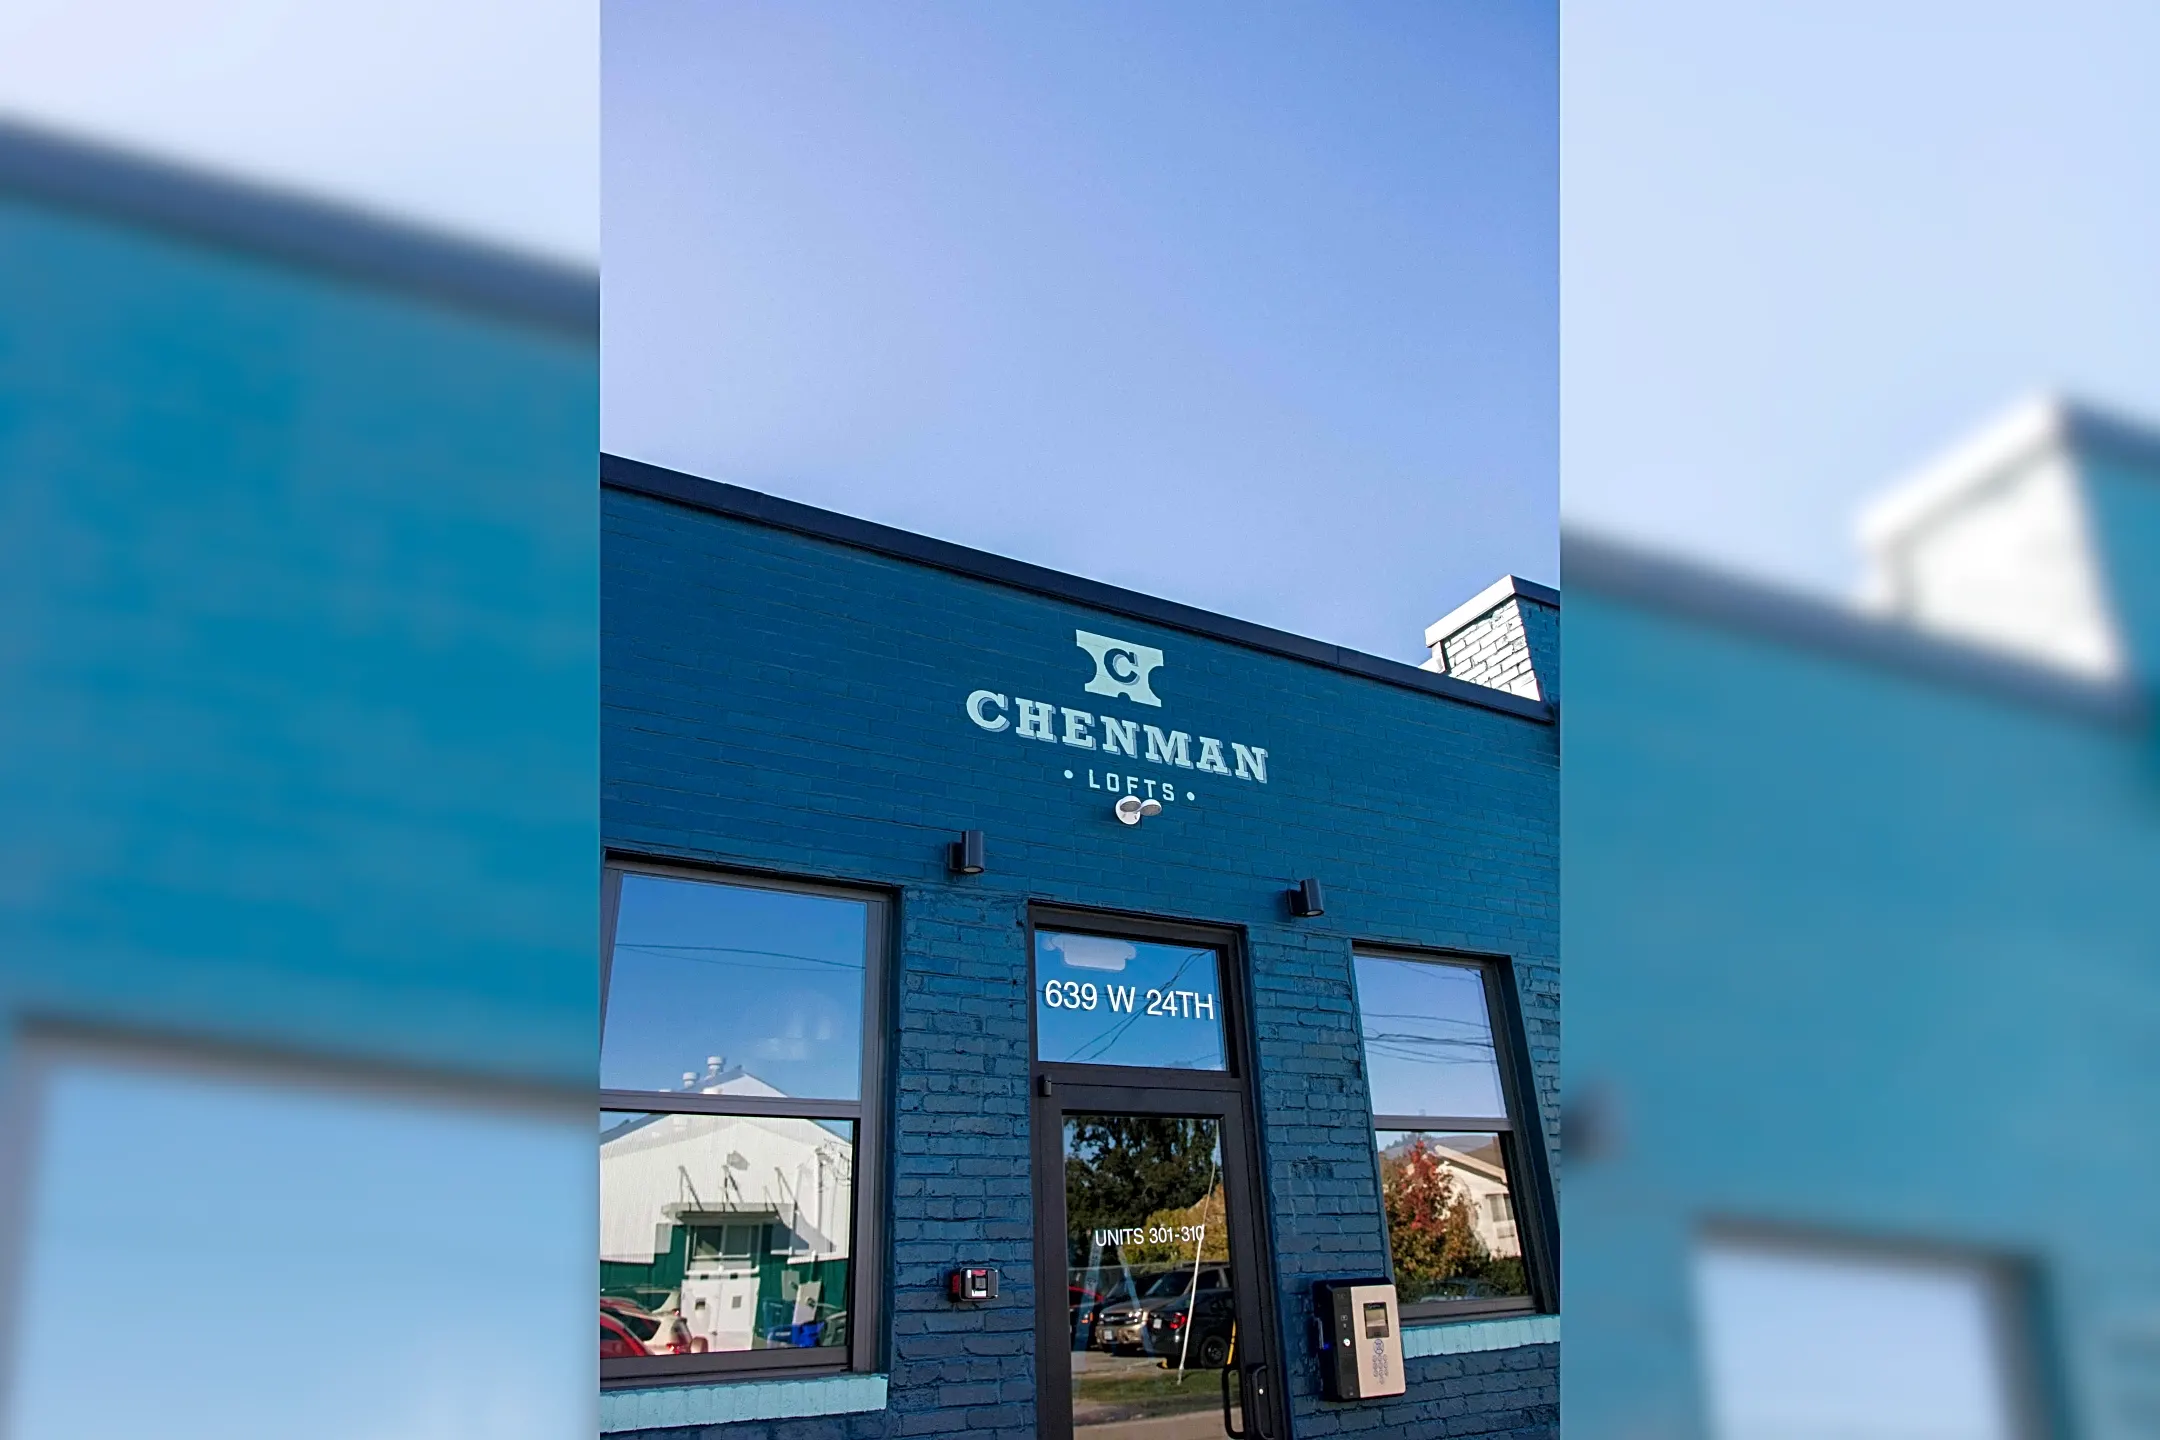 Community Signage - Chenman Lofts - Norfolk, VA